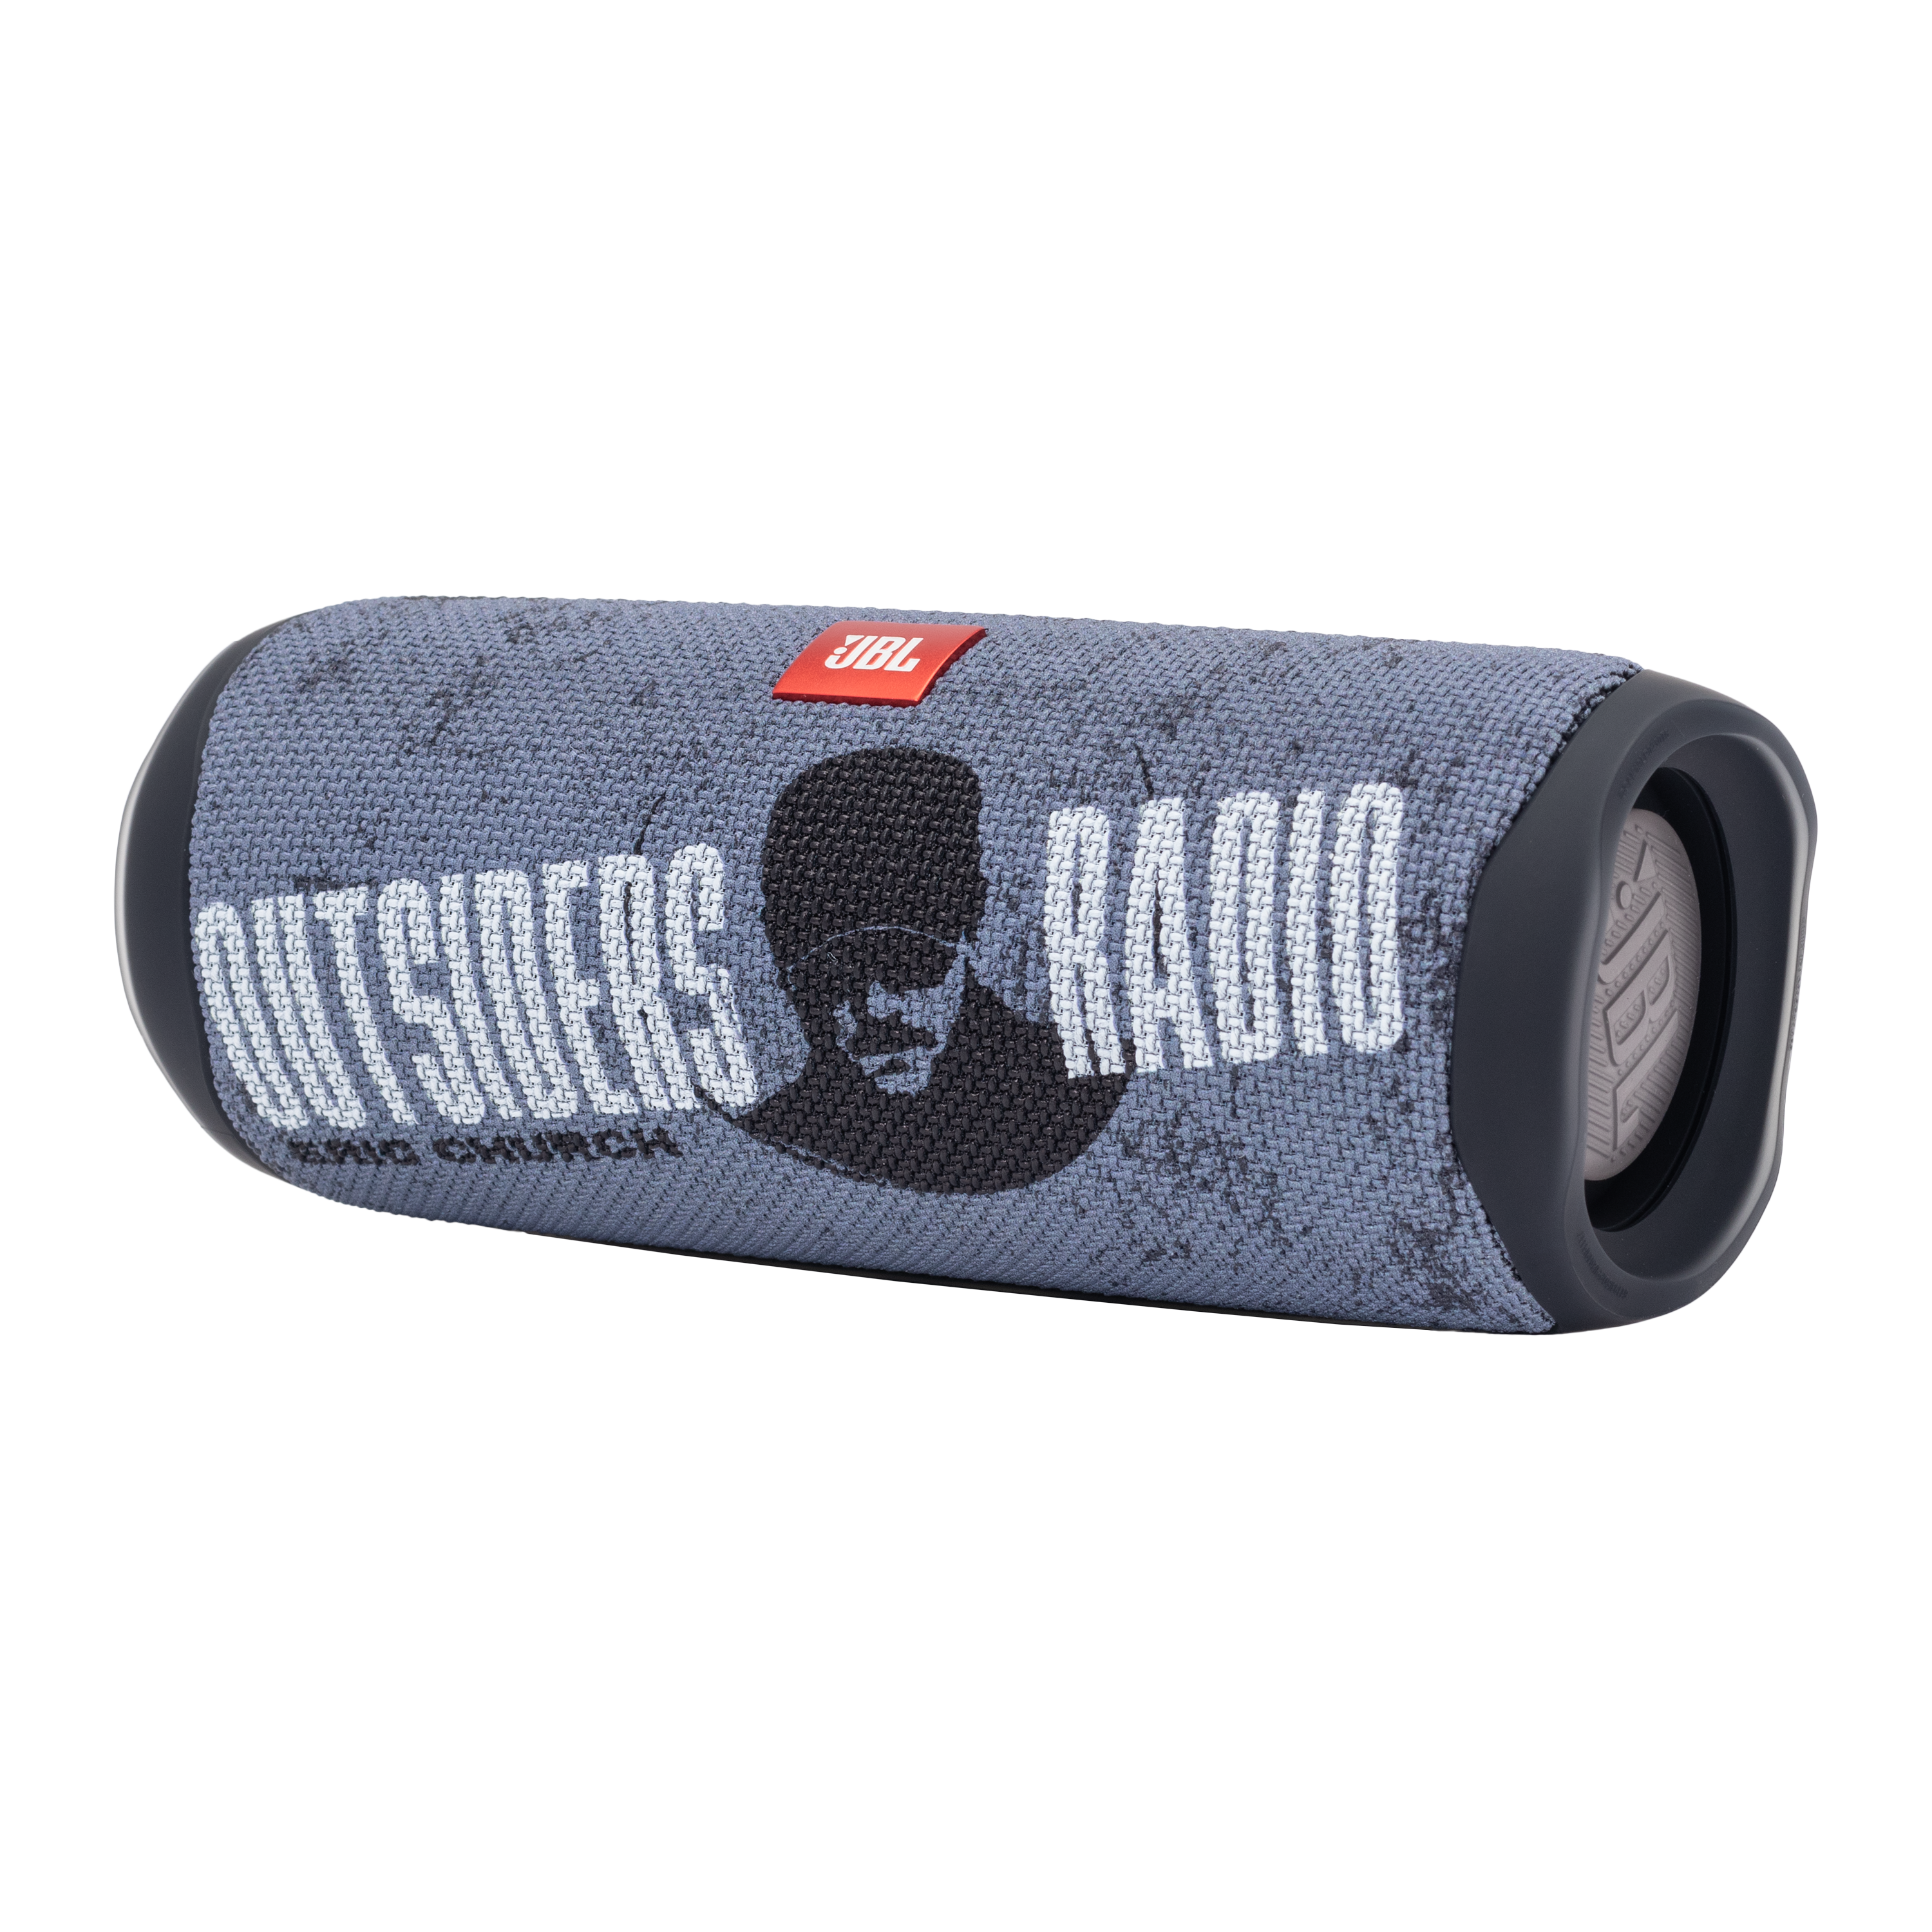 Outsiders Radio Bluetooth Speaker - Black